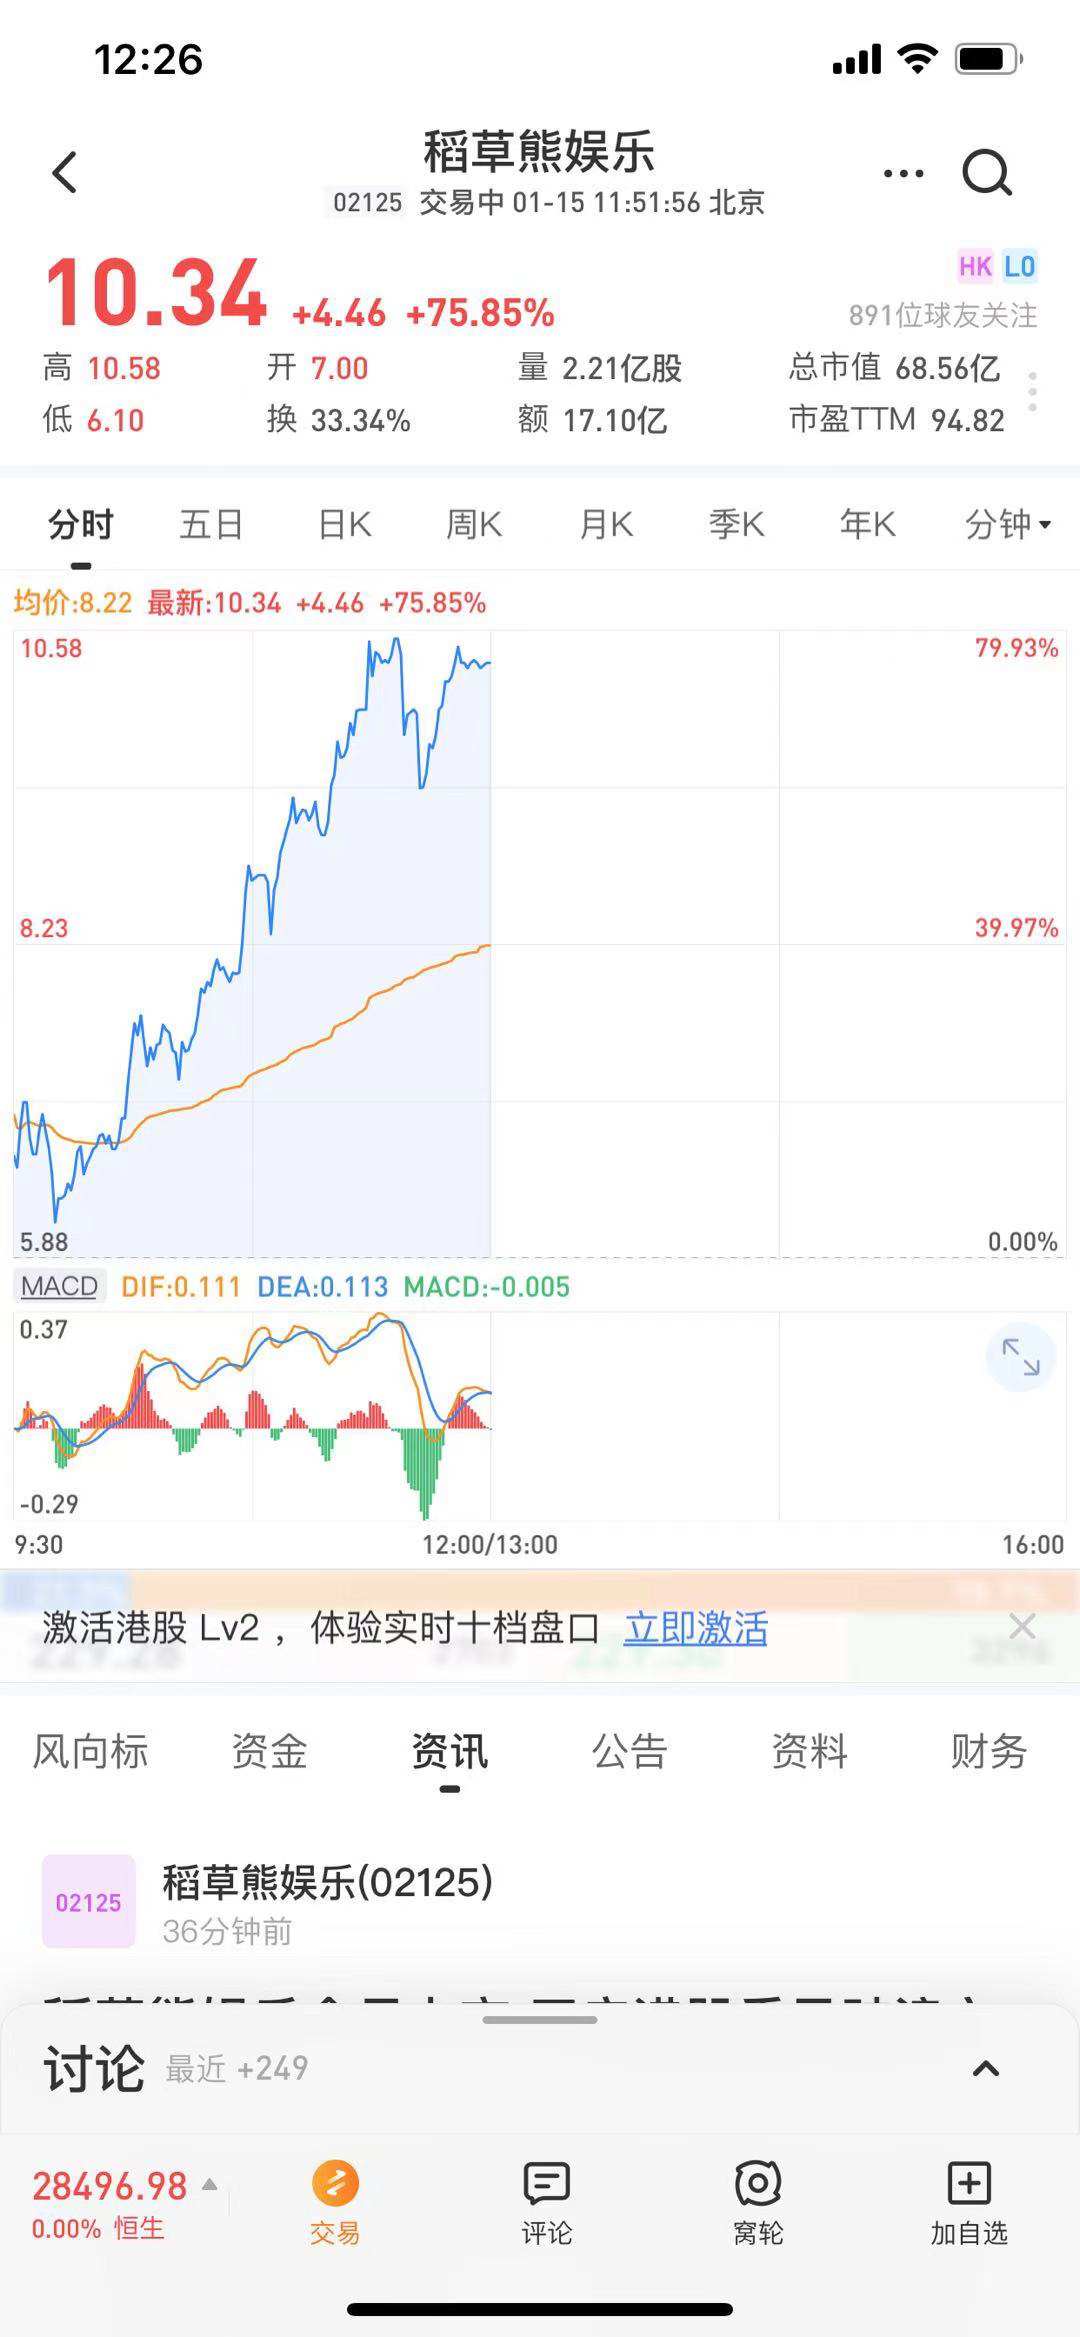 稻草熊(02125)挂牌首日股价涨幅超75% 为资本市场注入强劲信心